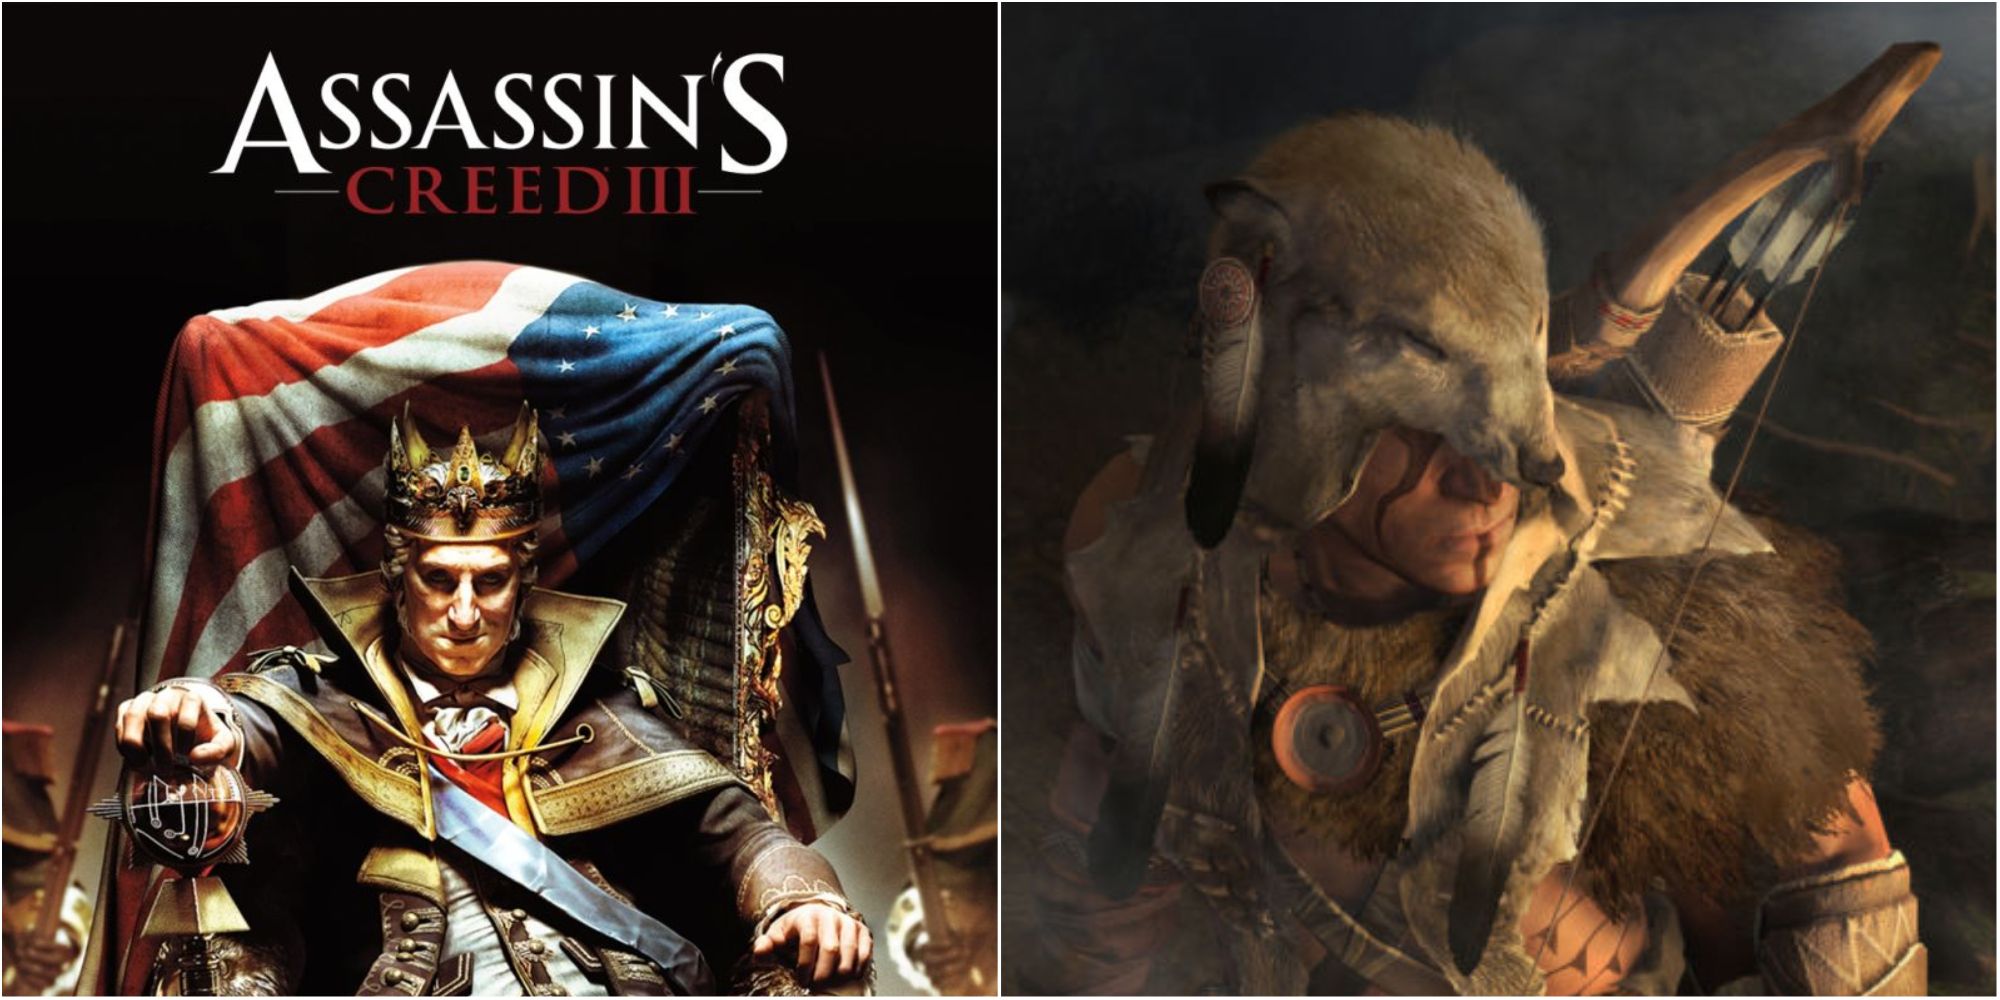 assassins creed 3 king washington cover & gameplay